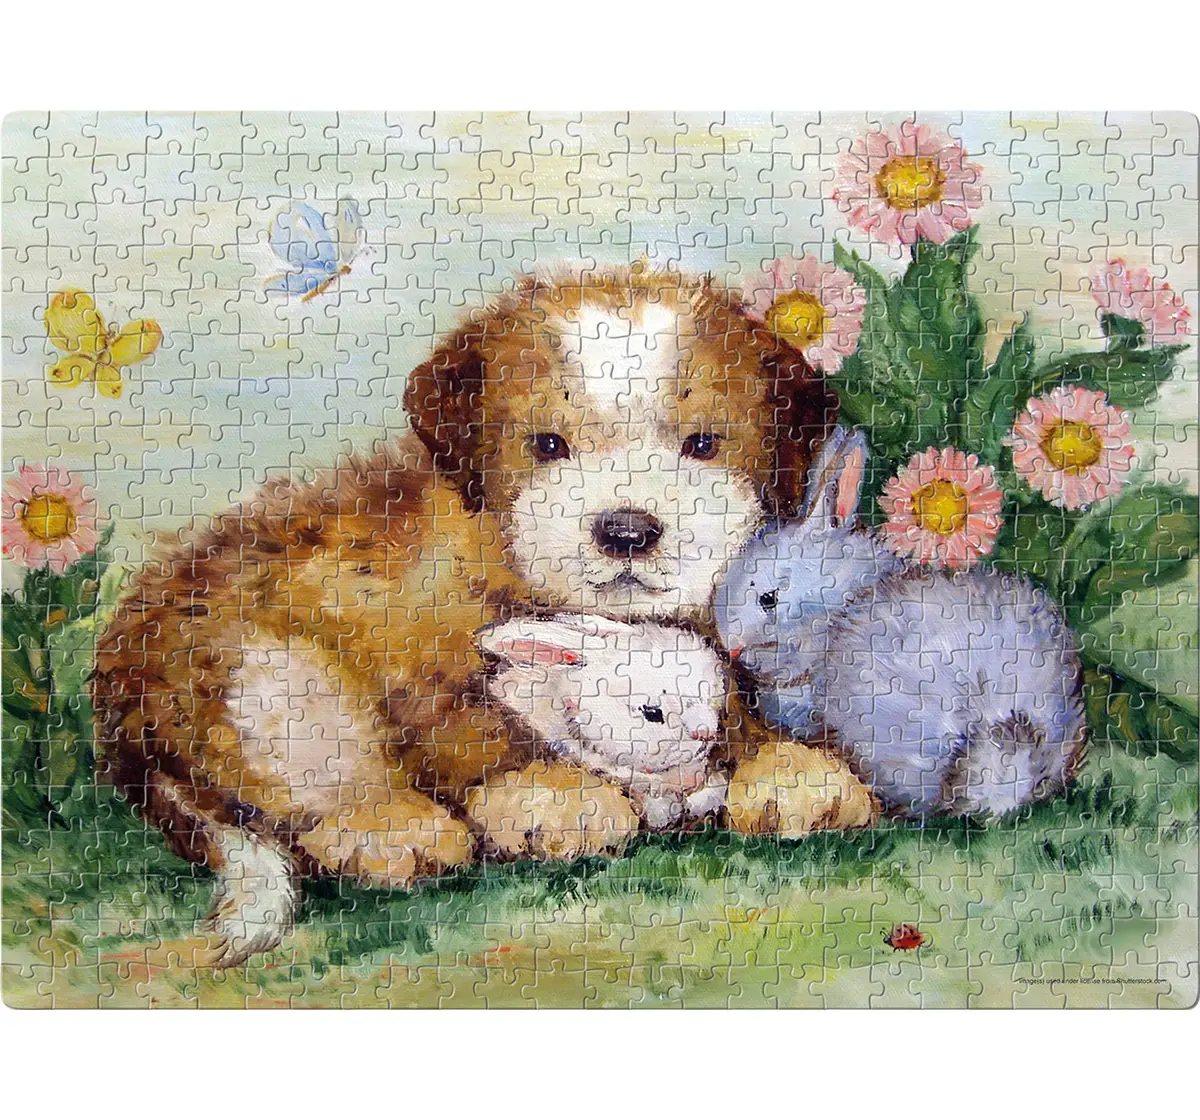 Frank Puppy and Rabbits Puzzle 500 Pieces, 10Y+